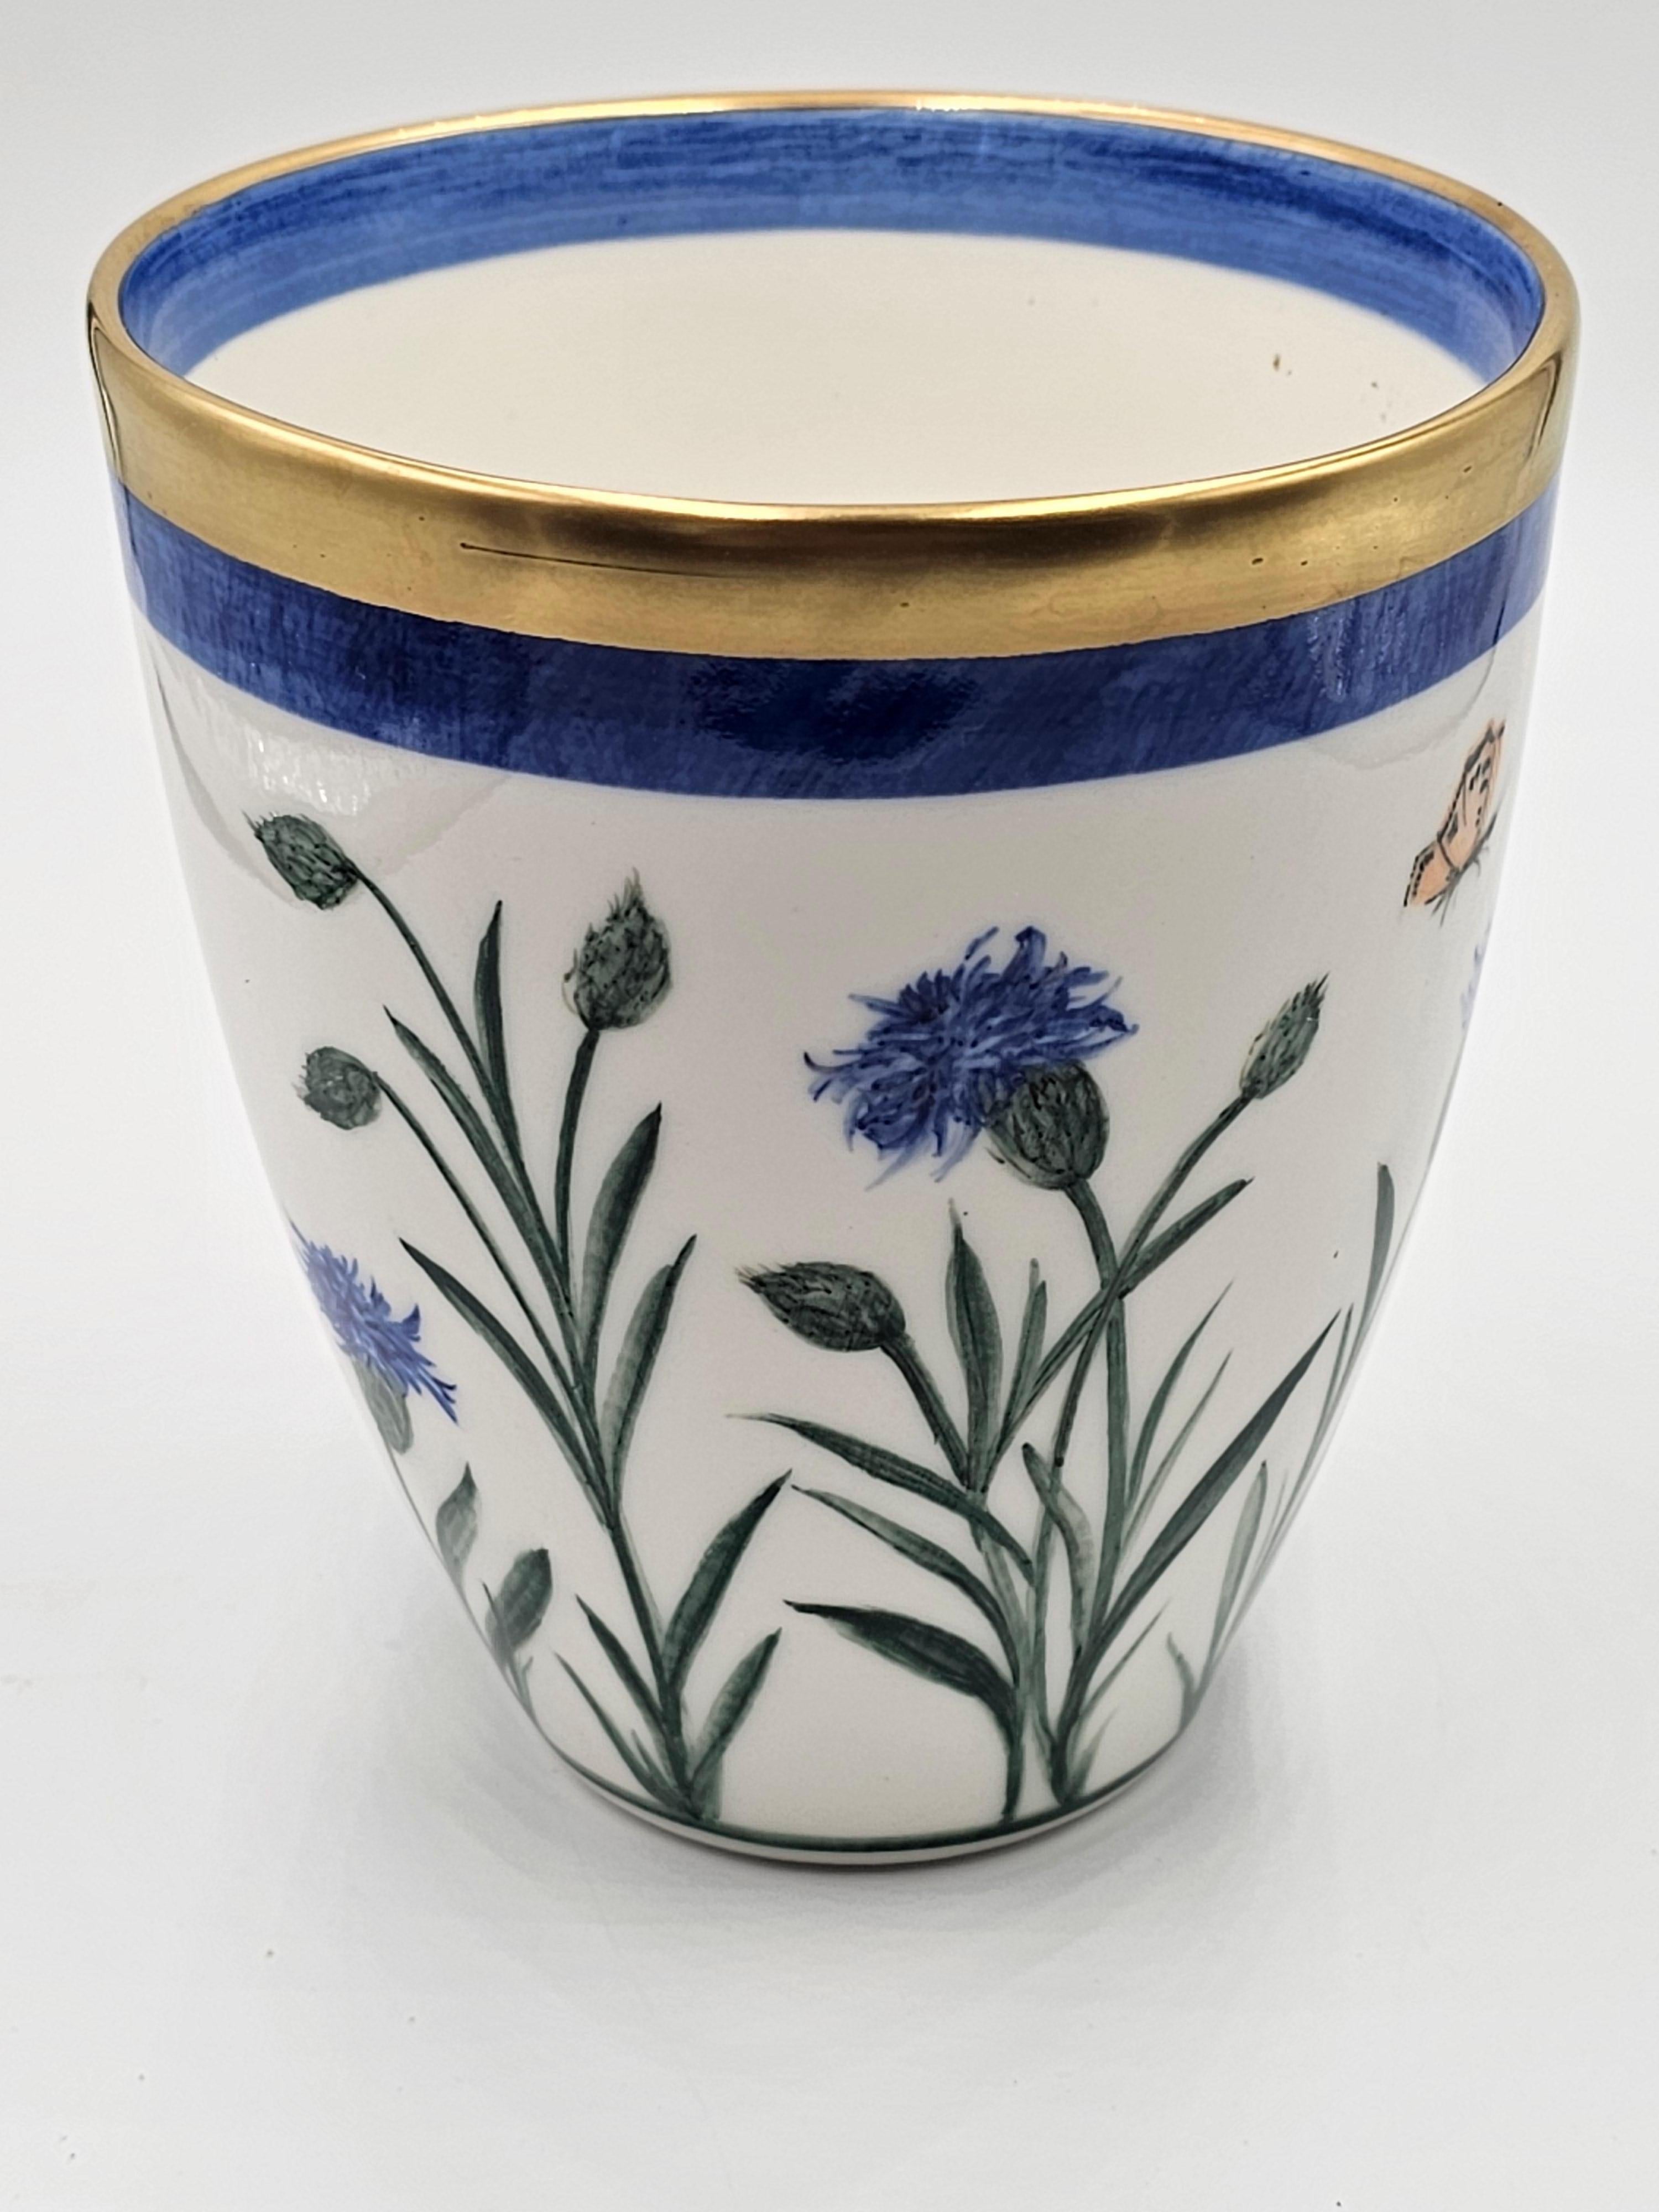 Freihändig bemalte Porzellanvase mit einem Blumendekor rundherum. Umrandet mit einem Platinrand. Komplett handgefertigt in Bayern/Deutschland mit einem exklusiven Dekor Kornblume in blauer Farbe für Sofina Boutique Kitzbühel.
Sieht schön aus mit